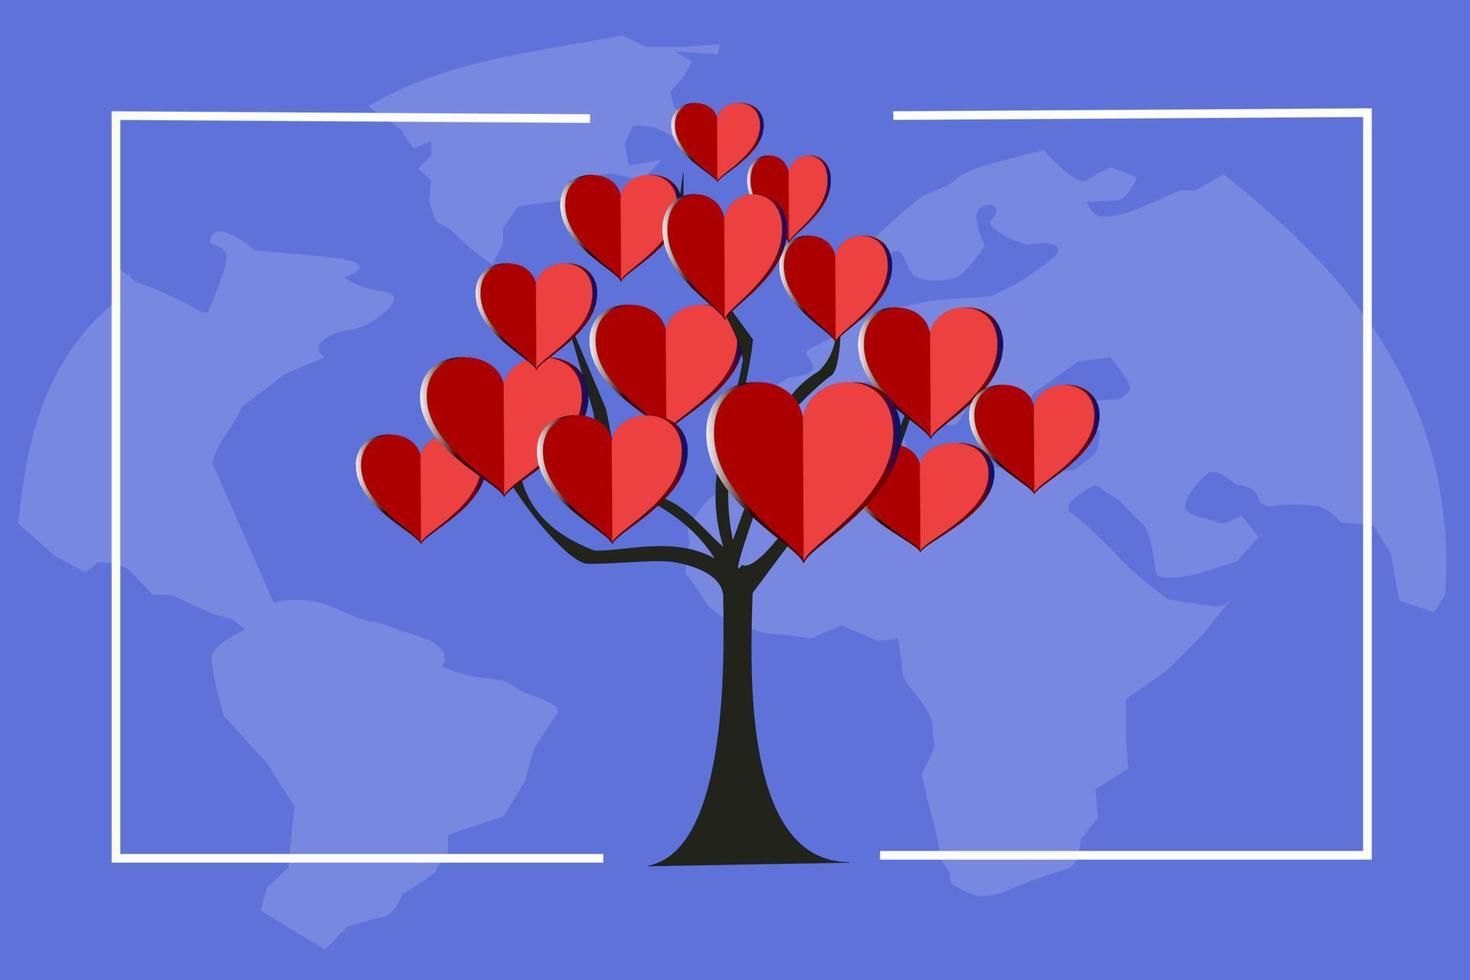 imágenes del árbol de hojas que amo o el emblema del amor o el árbol del amor, vector